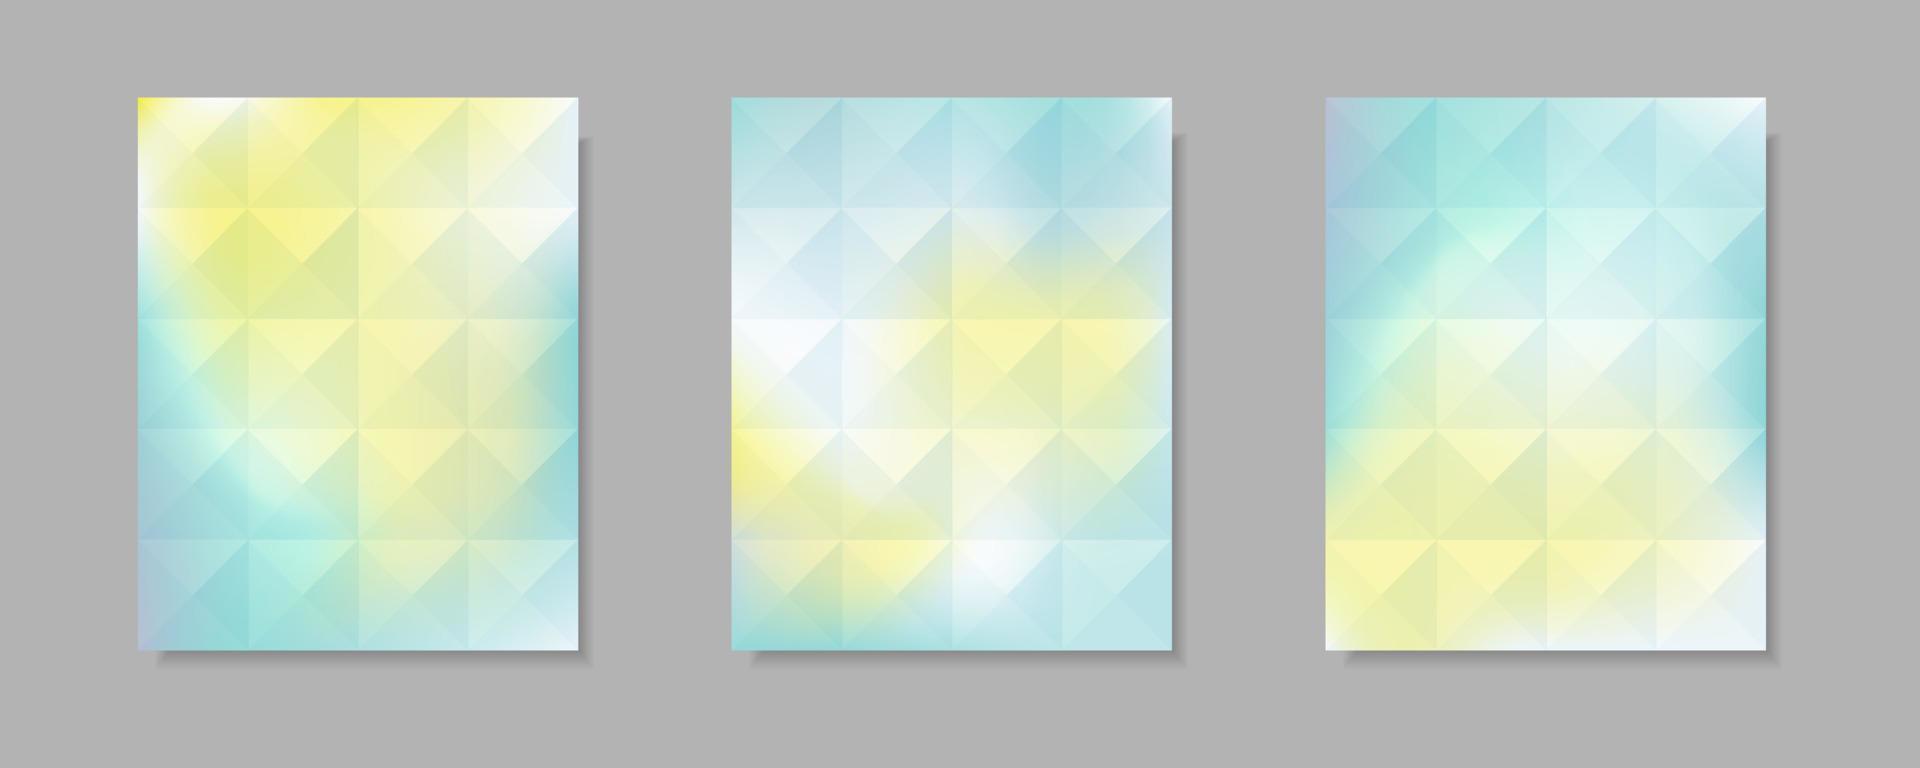 raccolta di sfondi di copertina vettoriali sfumati blu, bianchi, gialli astratti. design a triangolo con stile a forma di cristallo per sfondo brochure aziendale, poster e grafica.